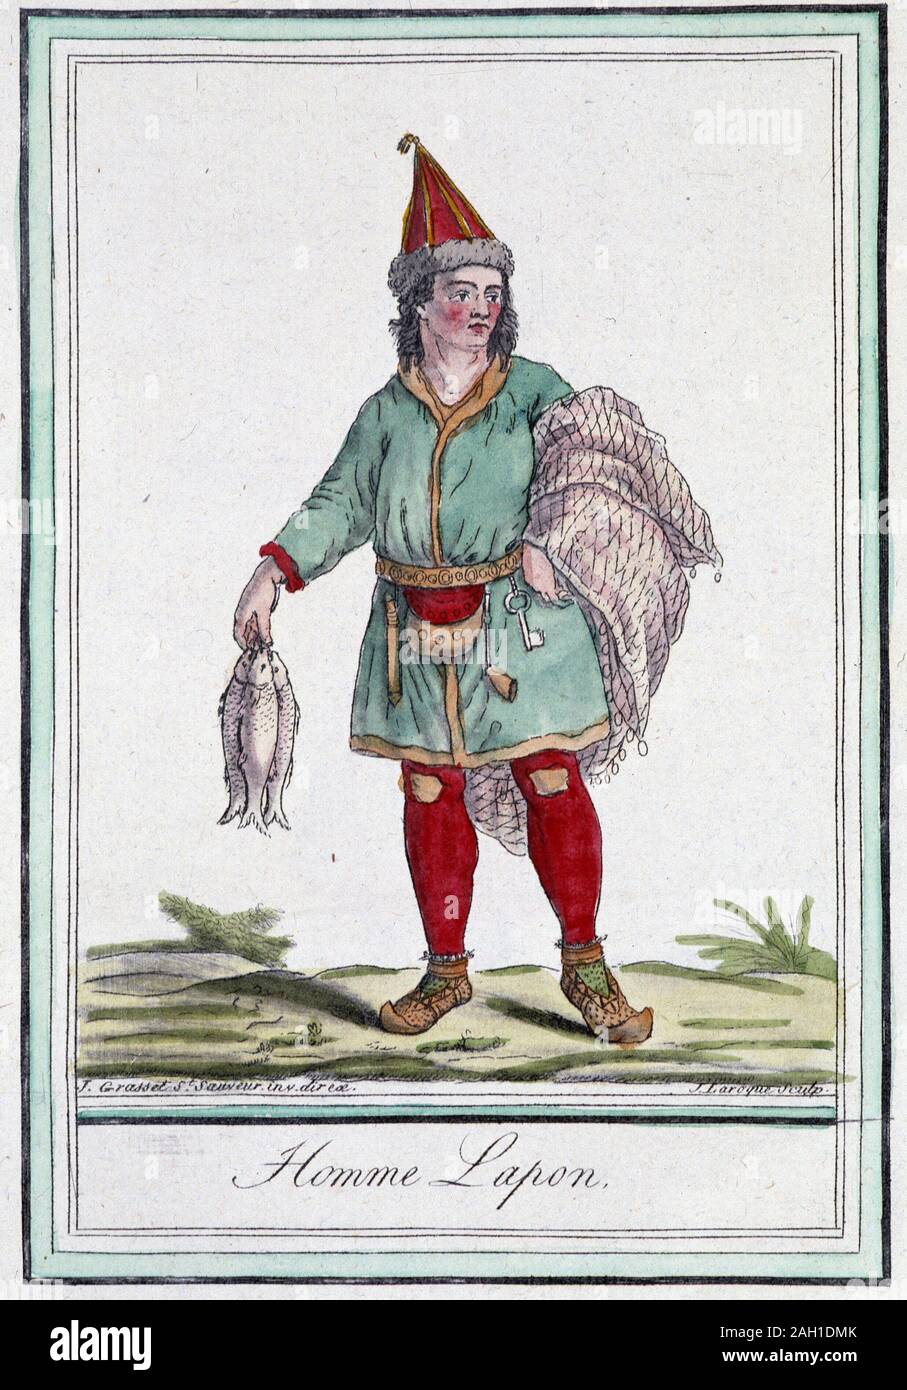 Homme lapon - in 'Encyclopedie de Voyages' par Grasset Saint Sauveur Paris 1796, Ed. Stockfoto